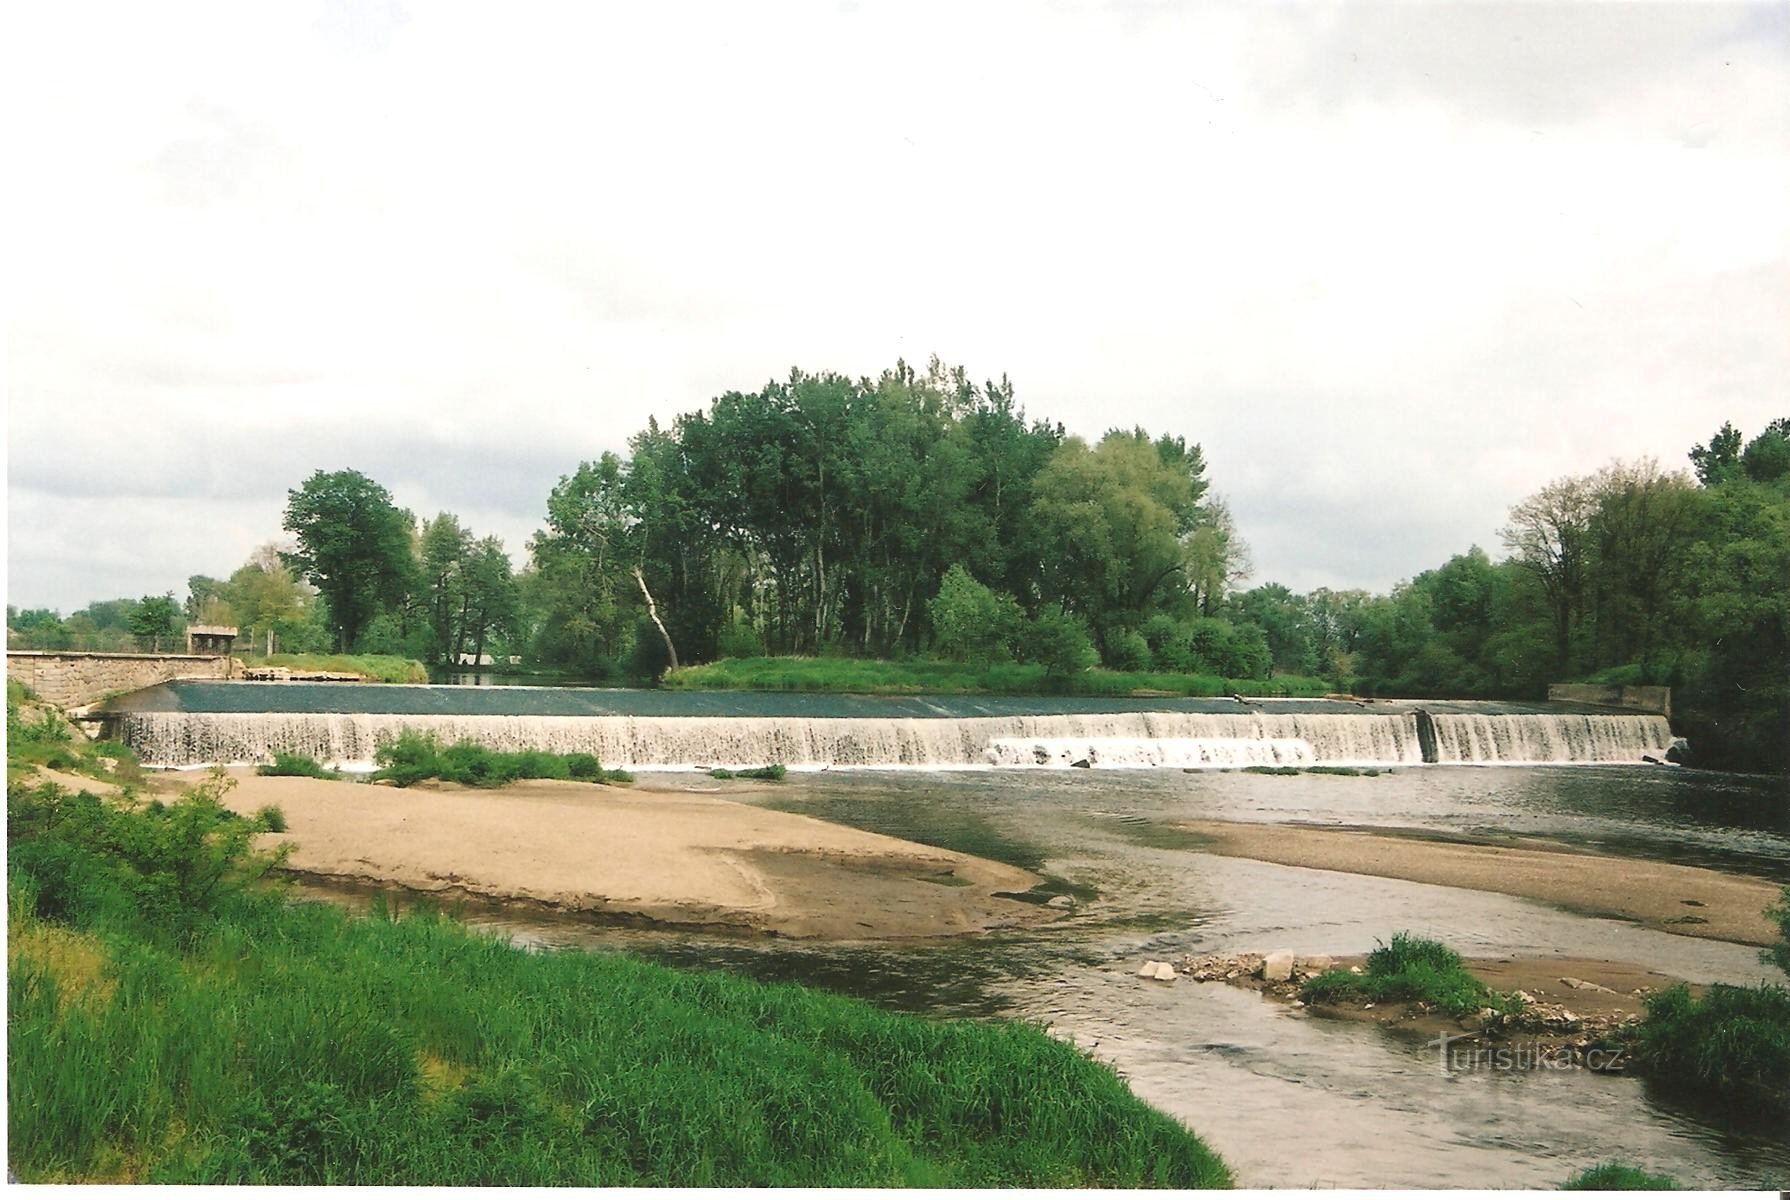 90 年代後半の歴史的な写真に映るツヴルチョヴィック堰